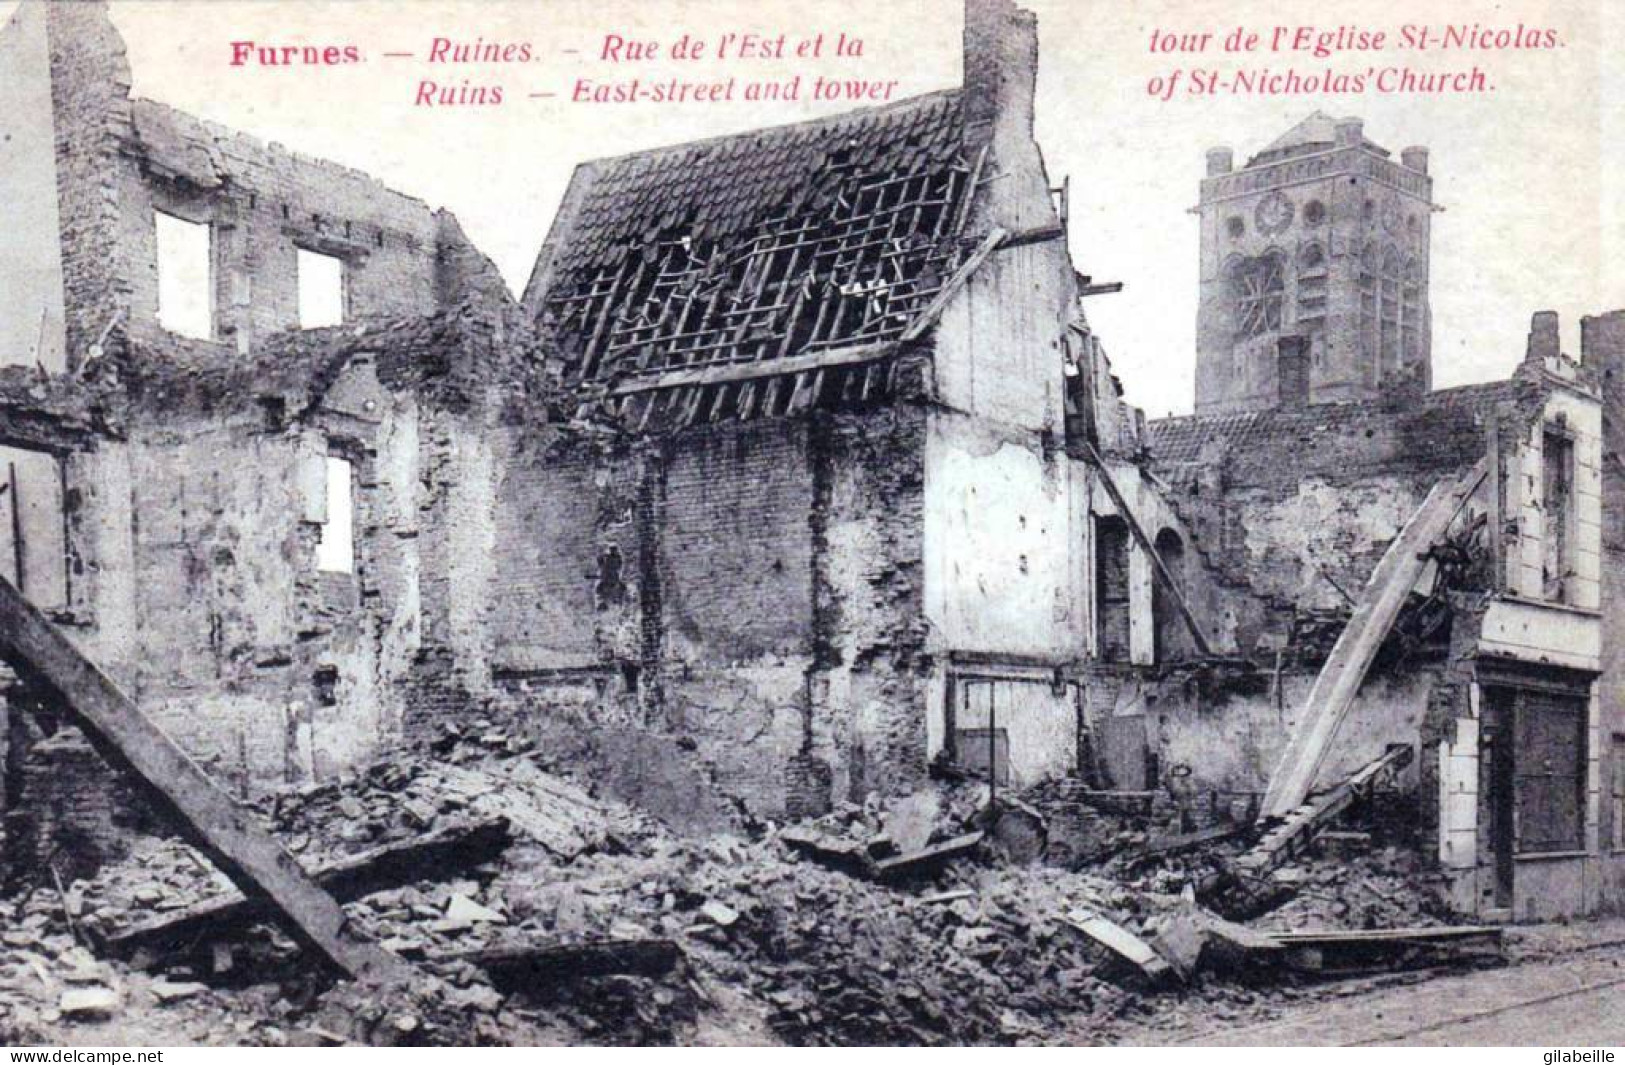  VEURNE/ FURNES -  Ruines De Furnes -rue De L'est Et La Tour De L'église St Nicolas  - Guerre 1914/18 - Veurne